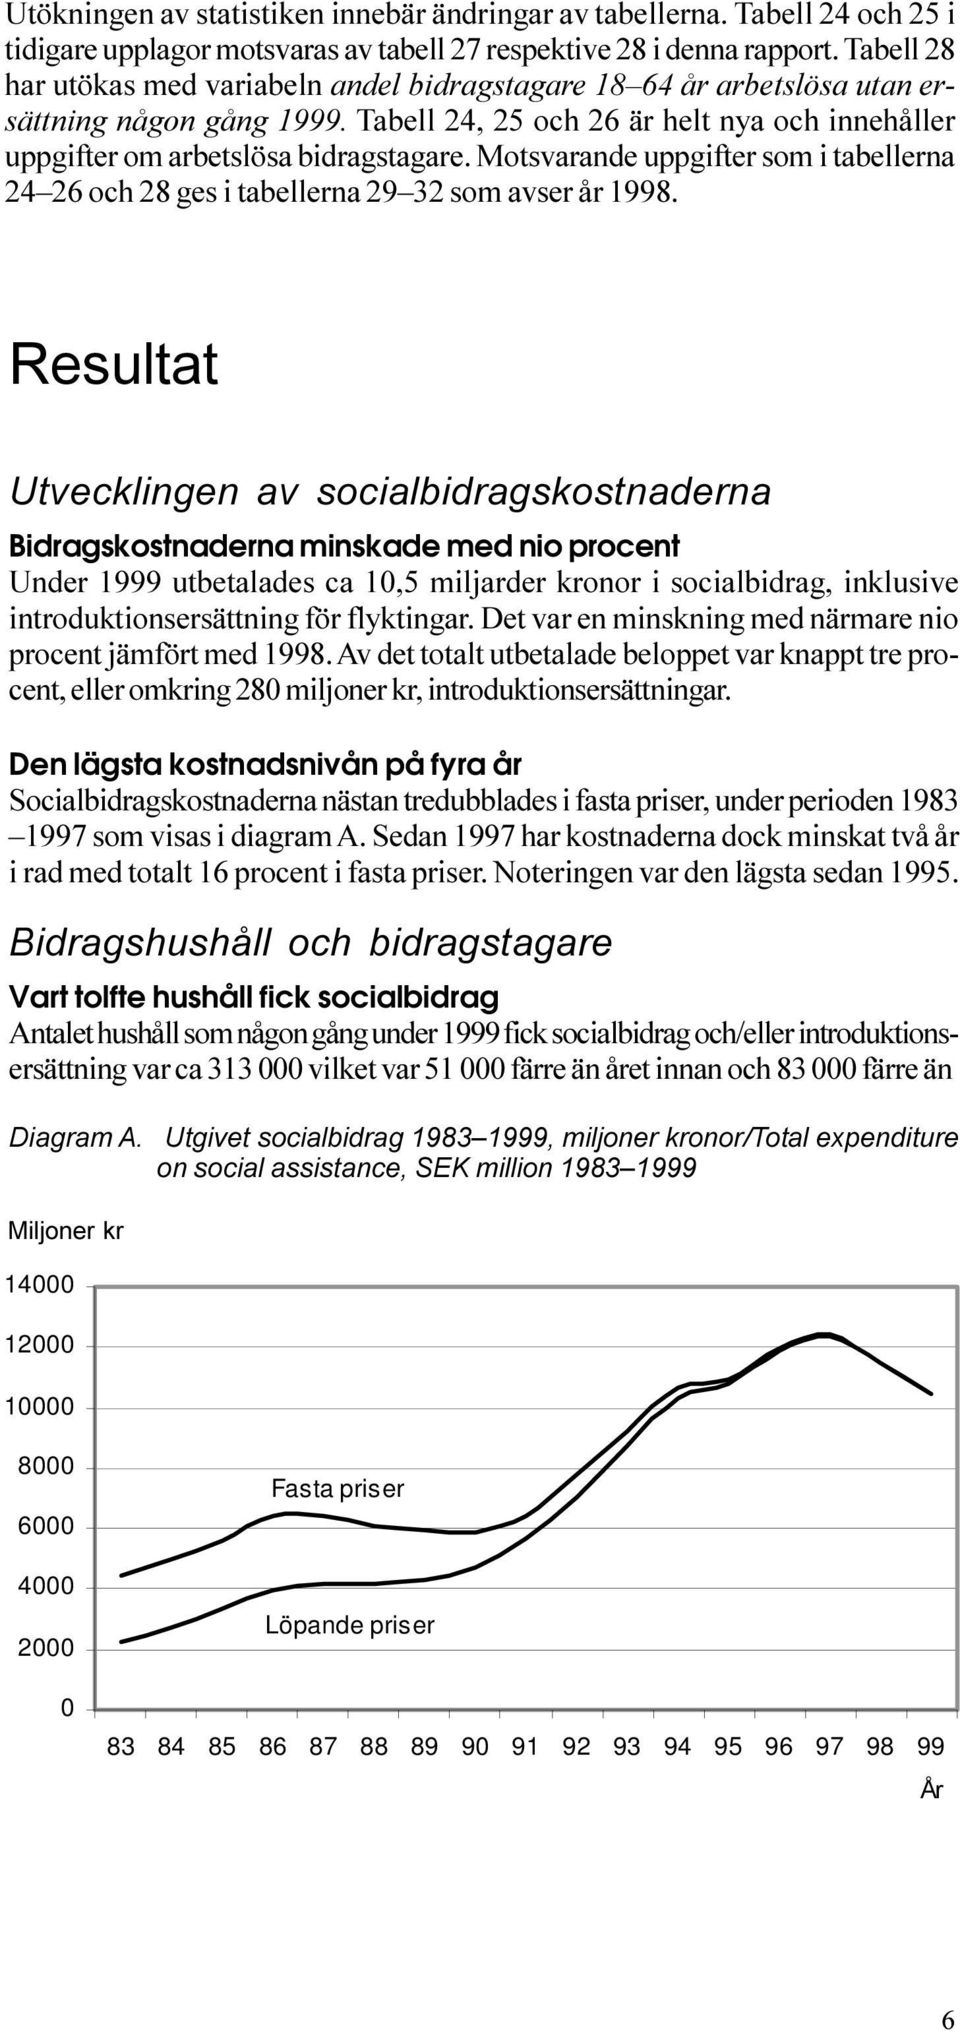 och 28 ges i tabellerna 29 32 som avser år 1998 Resultat Utvecklingen av socialbidragskostnaderna Bidragskostnaderna minskade med nio procent Under 1999 utbetalades ca 10,5 miljarder kronor i